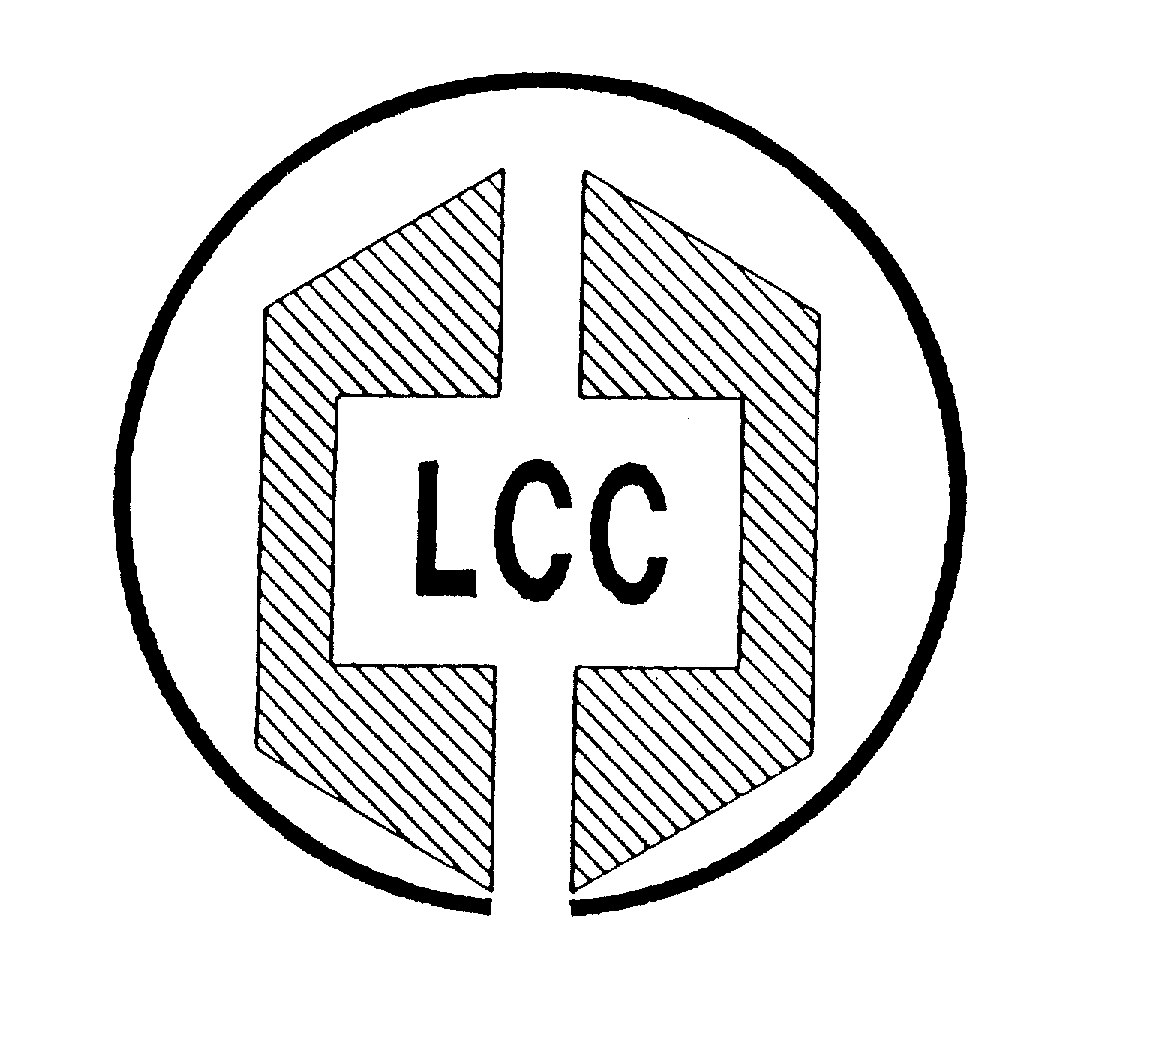 LCC